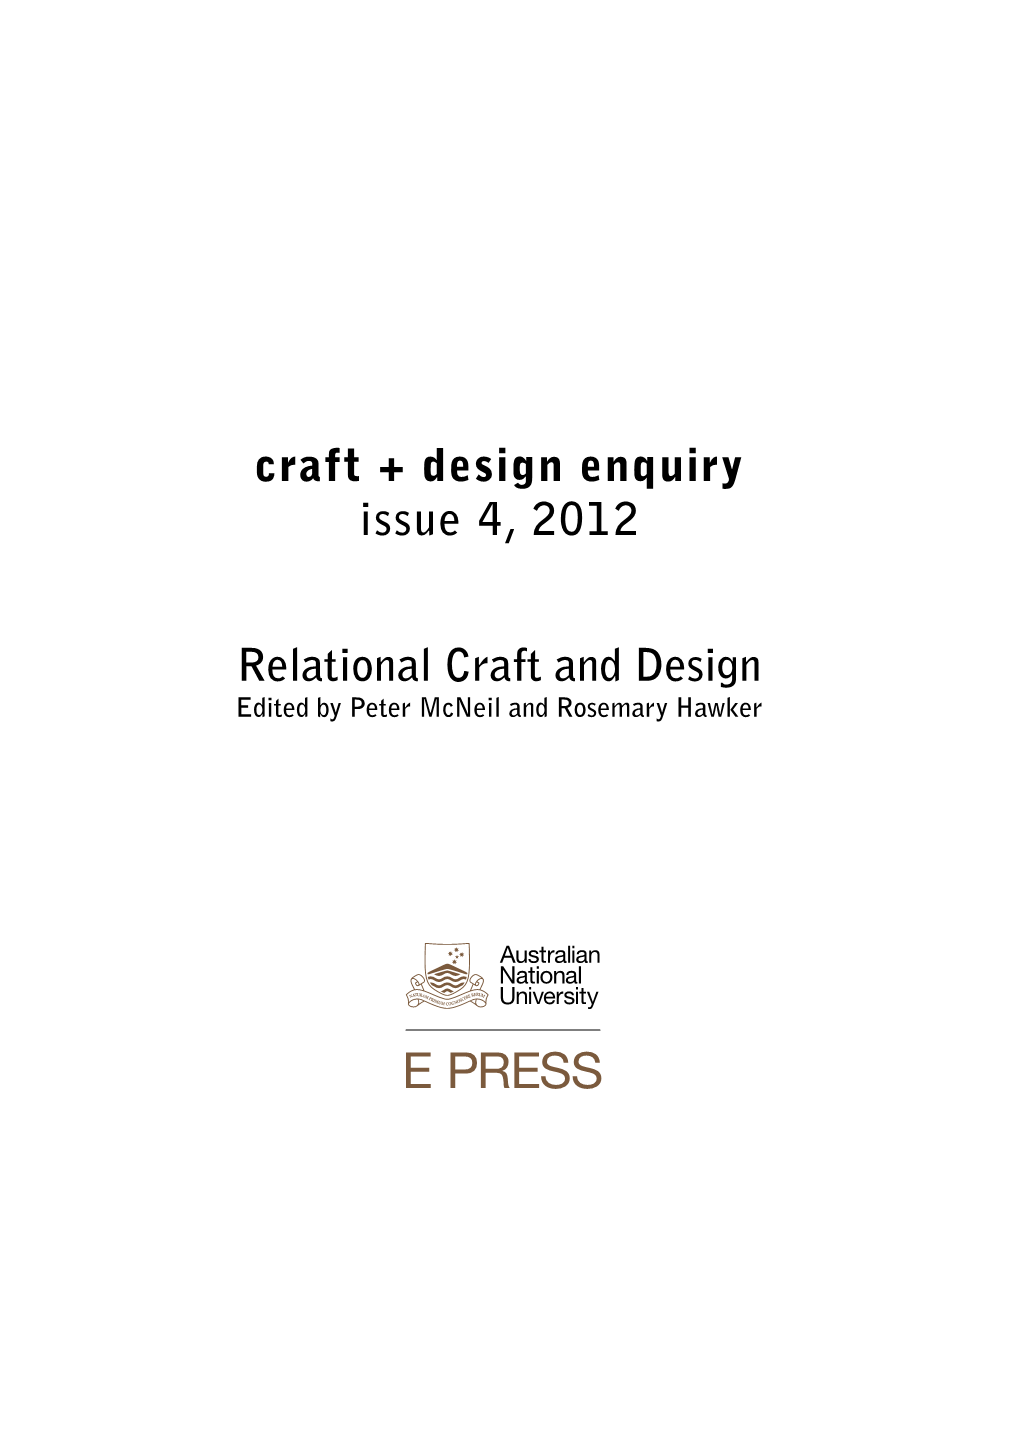 Craft + Design Enquiry: Issue 4, 2012